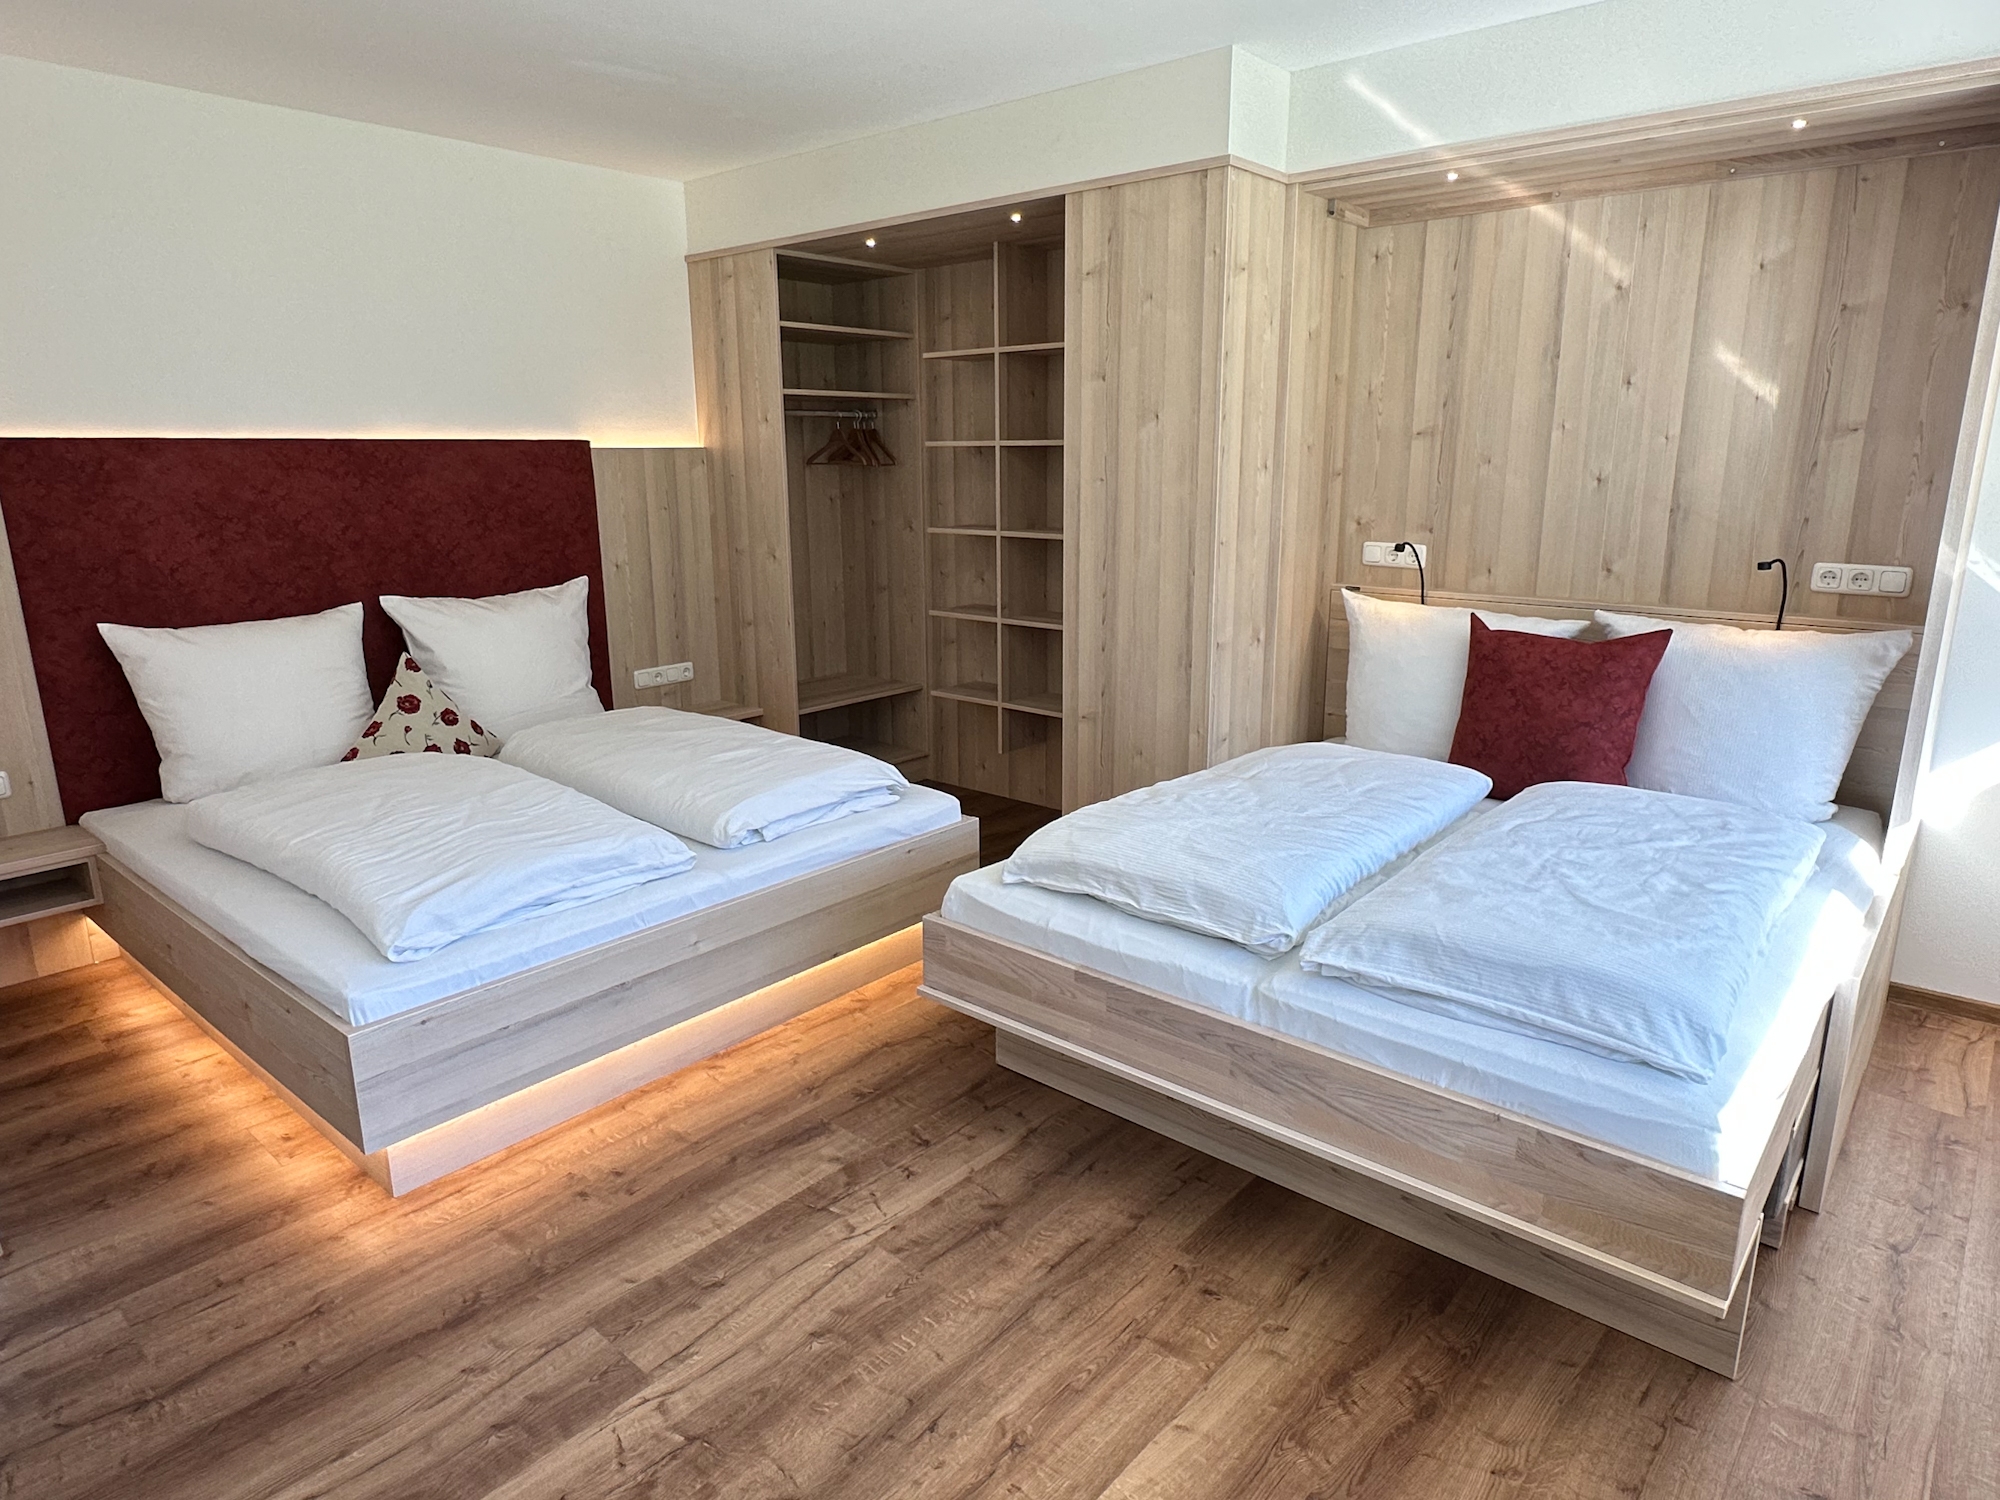 Appartementhaus Zillertal: Ferienwohnung für 3 Personen - Schlafzimmer (Beispiel)